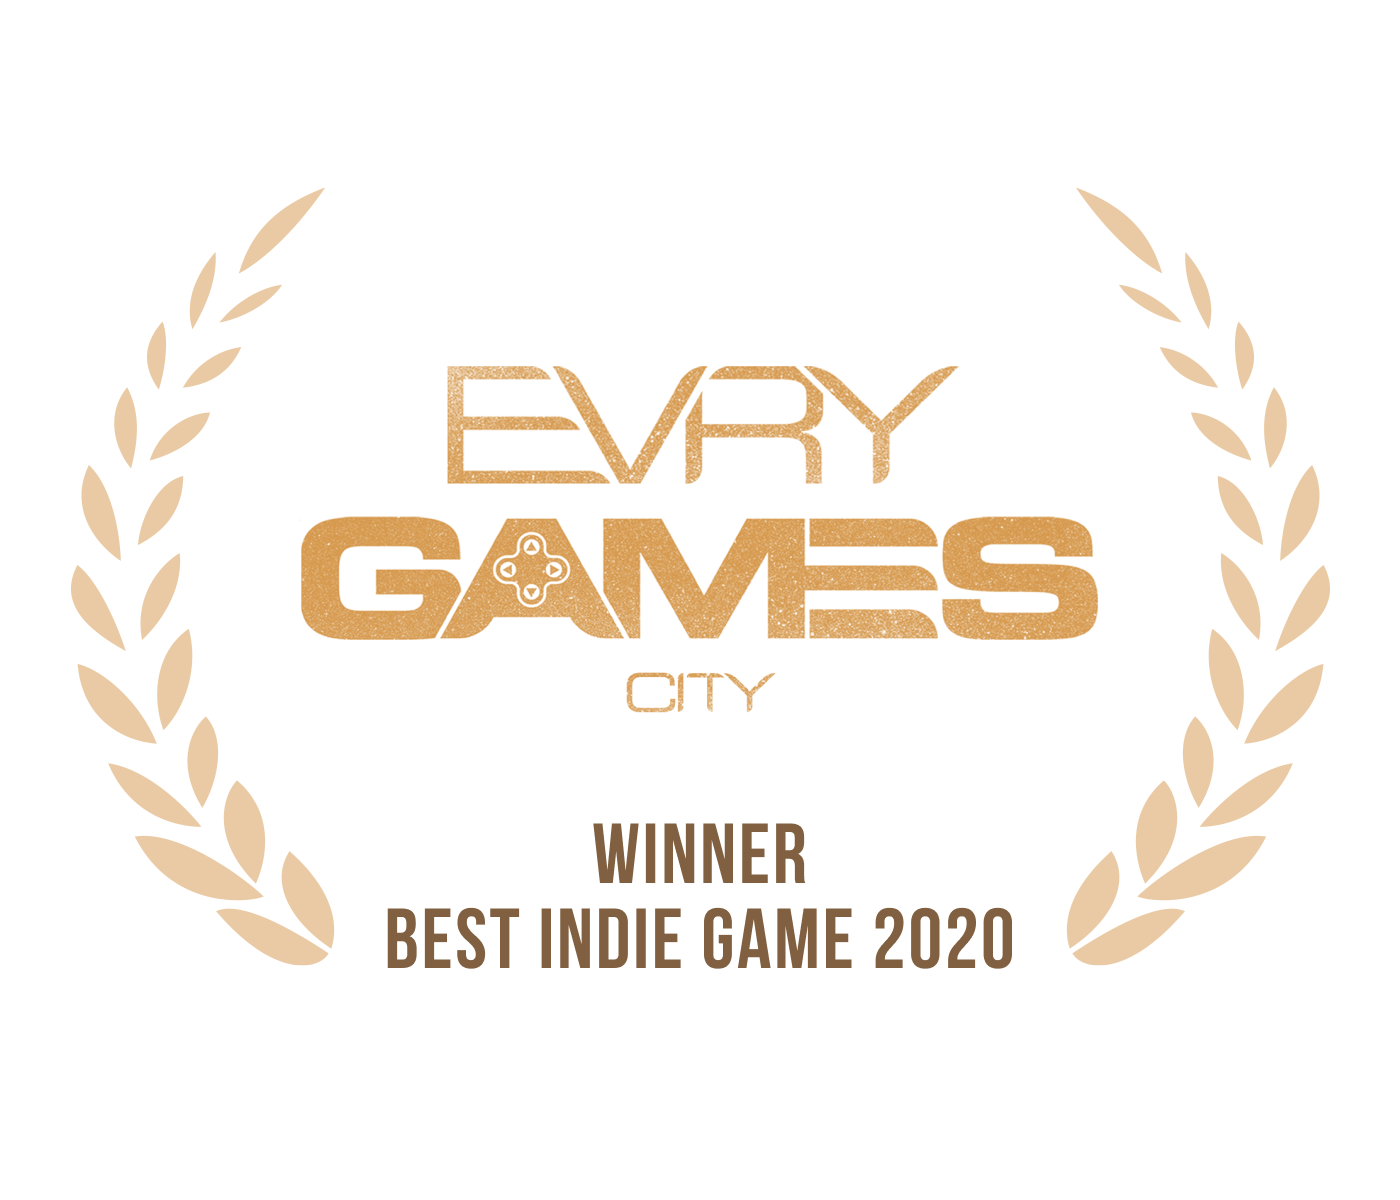 Logo evry games city awards 2020